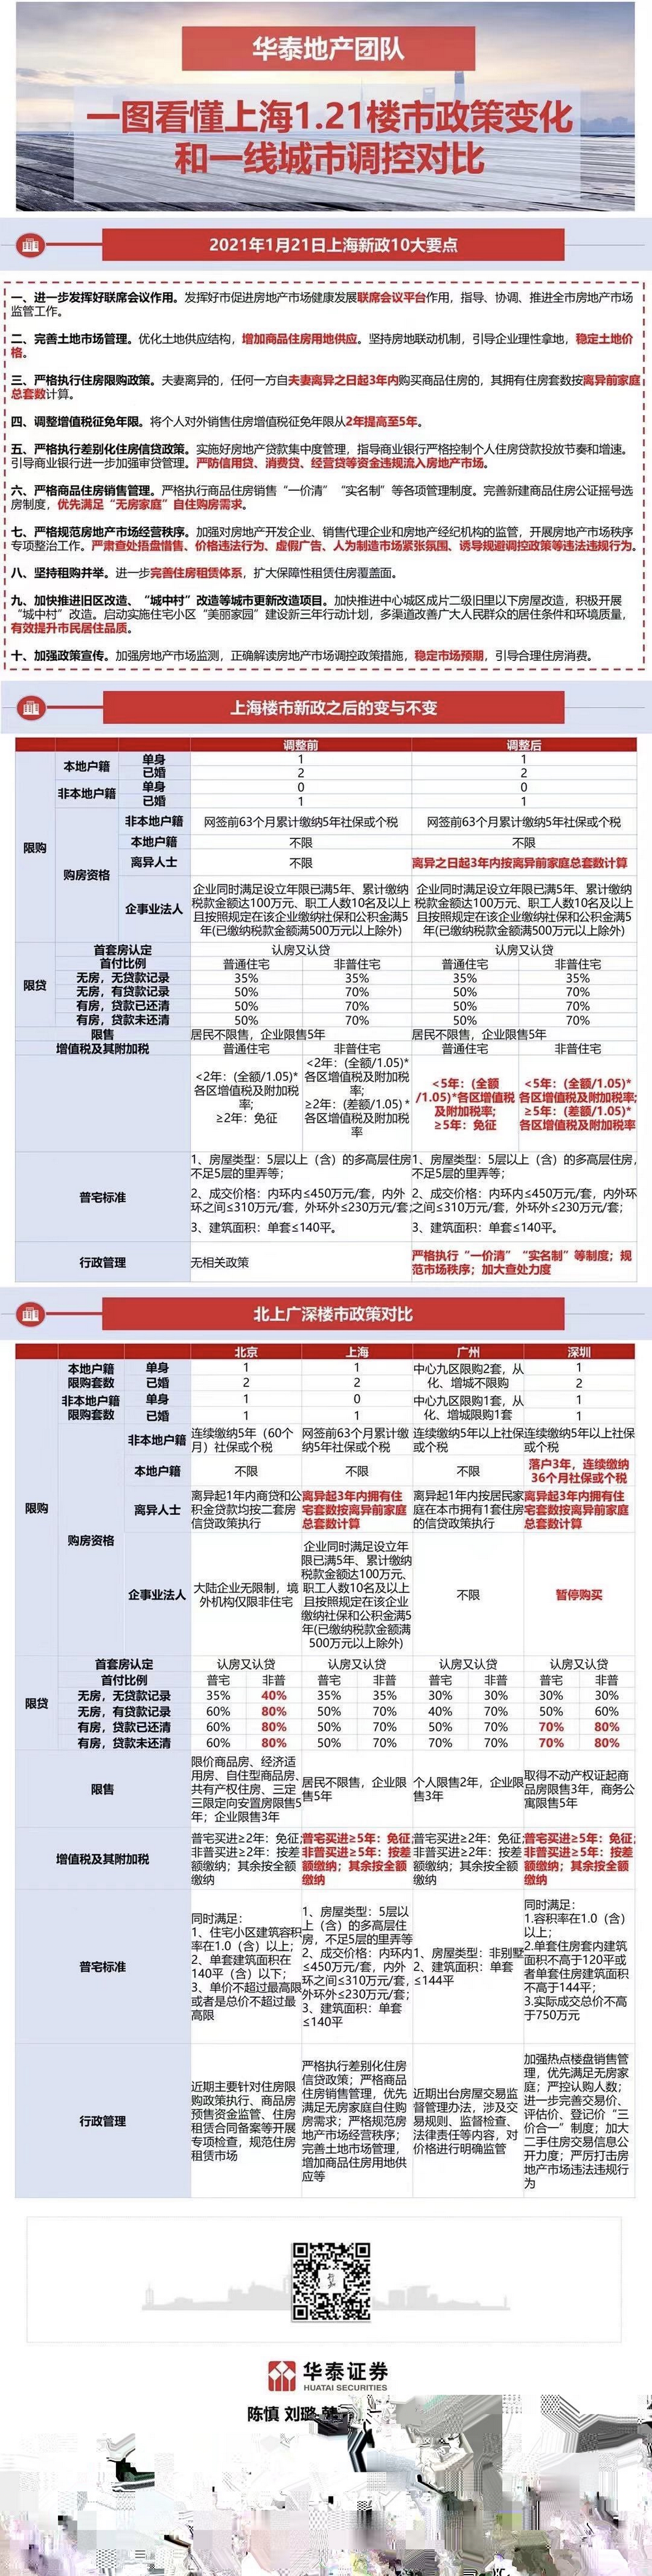 一图看懂上海1.21楼市政策变化和一线城市调控对比